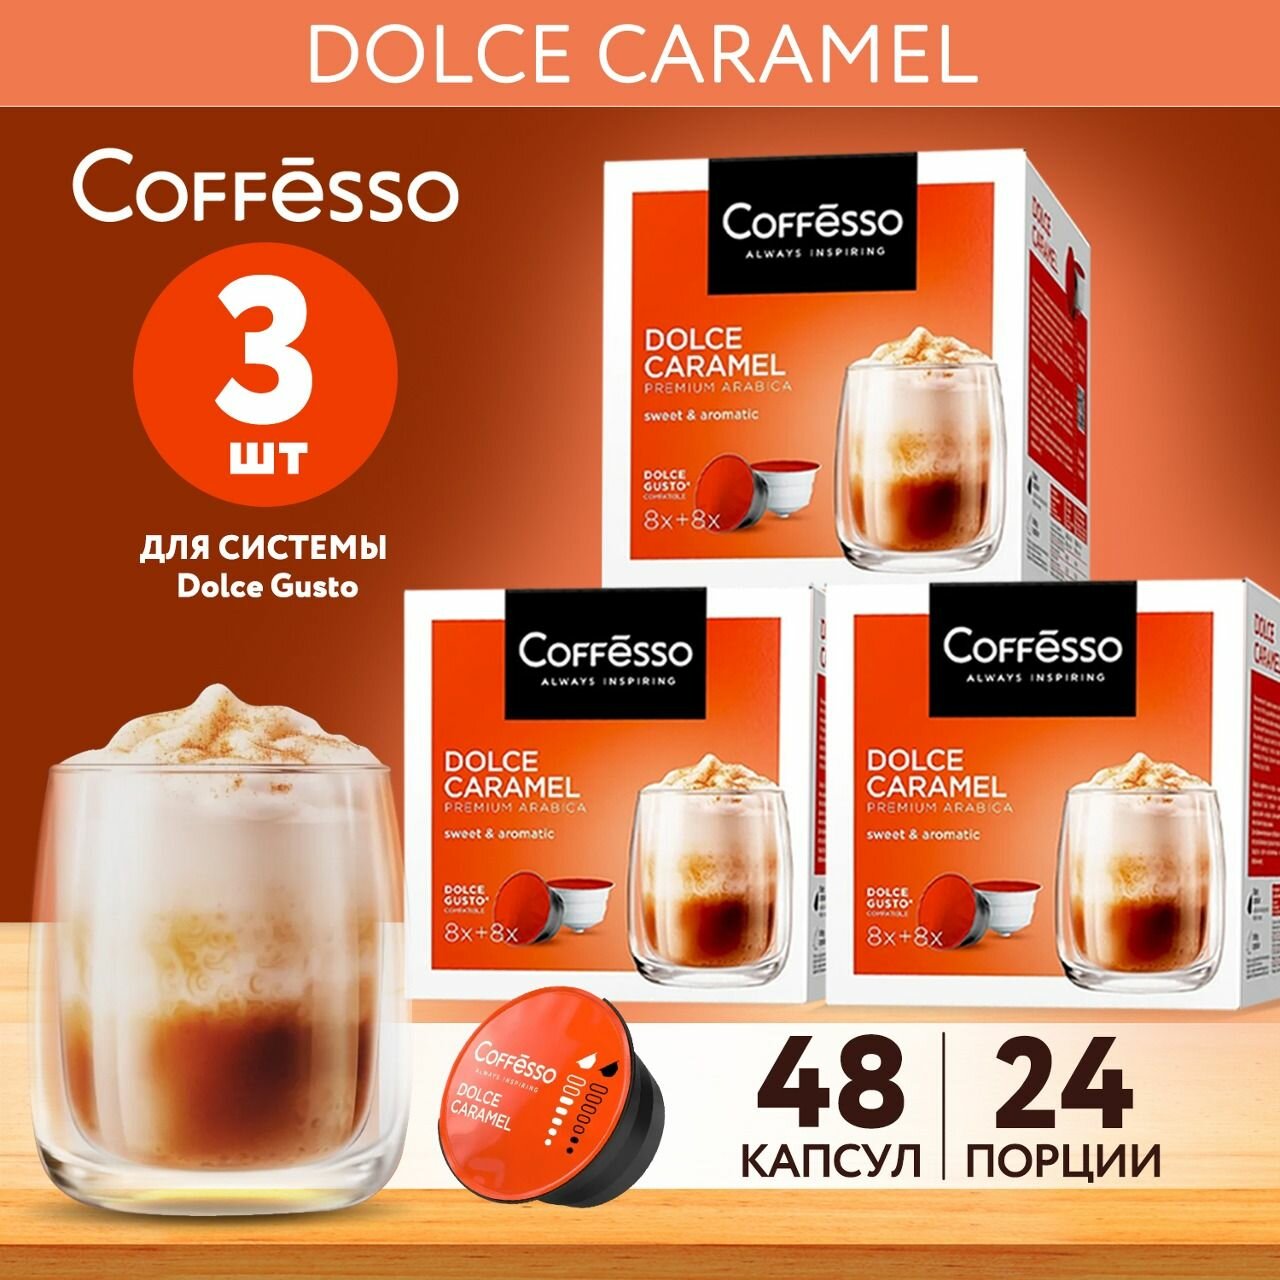 Кофе в капсулах Coffesso DOLCE CARAMEL для кофемашины Dolce Gusto, 3 упаковки по 16 капсул